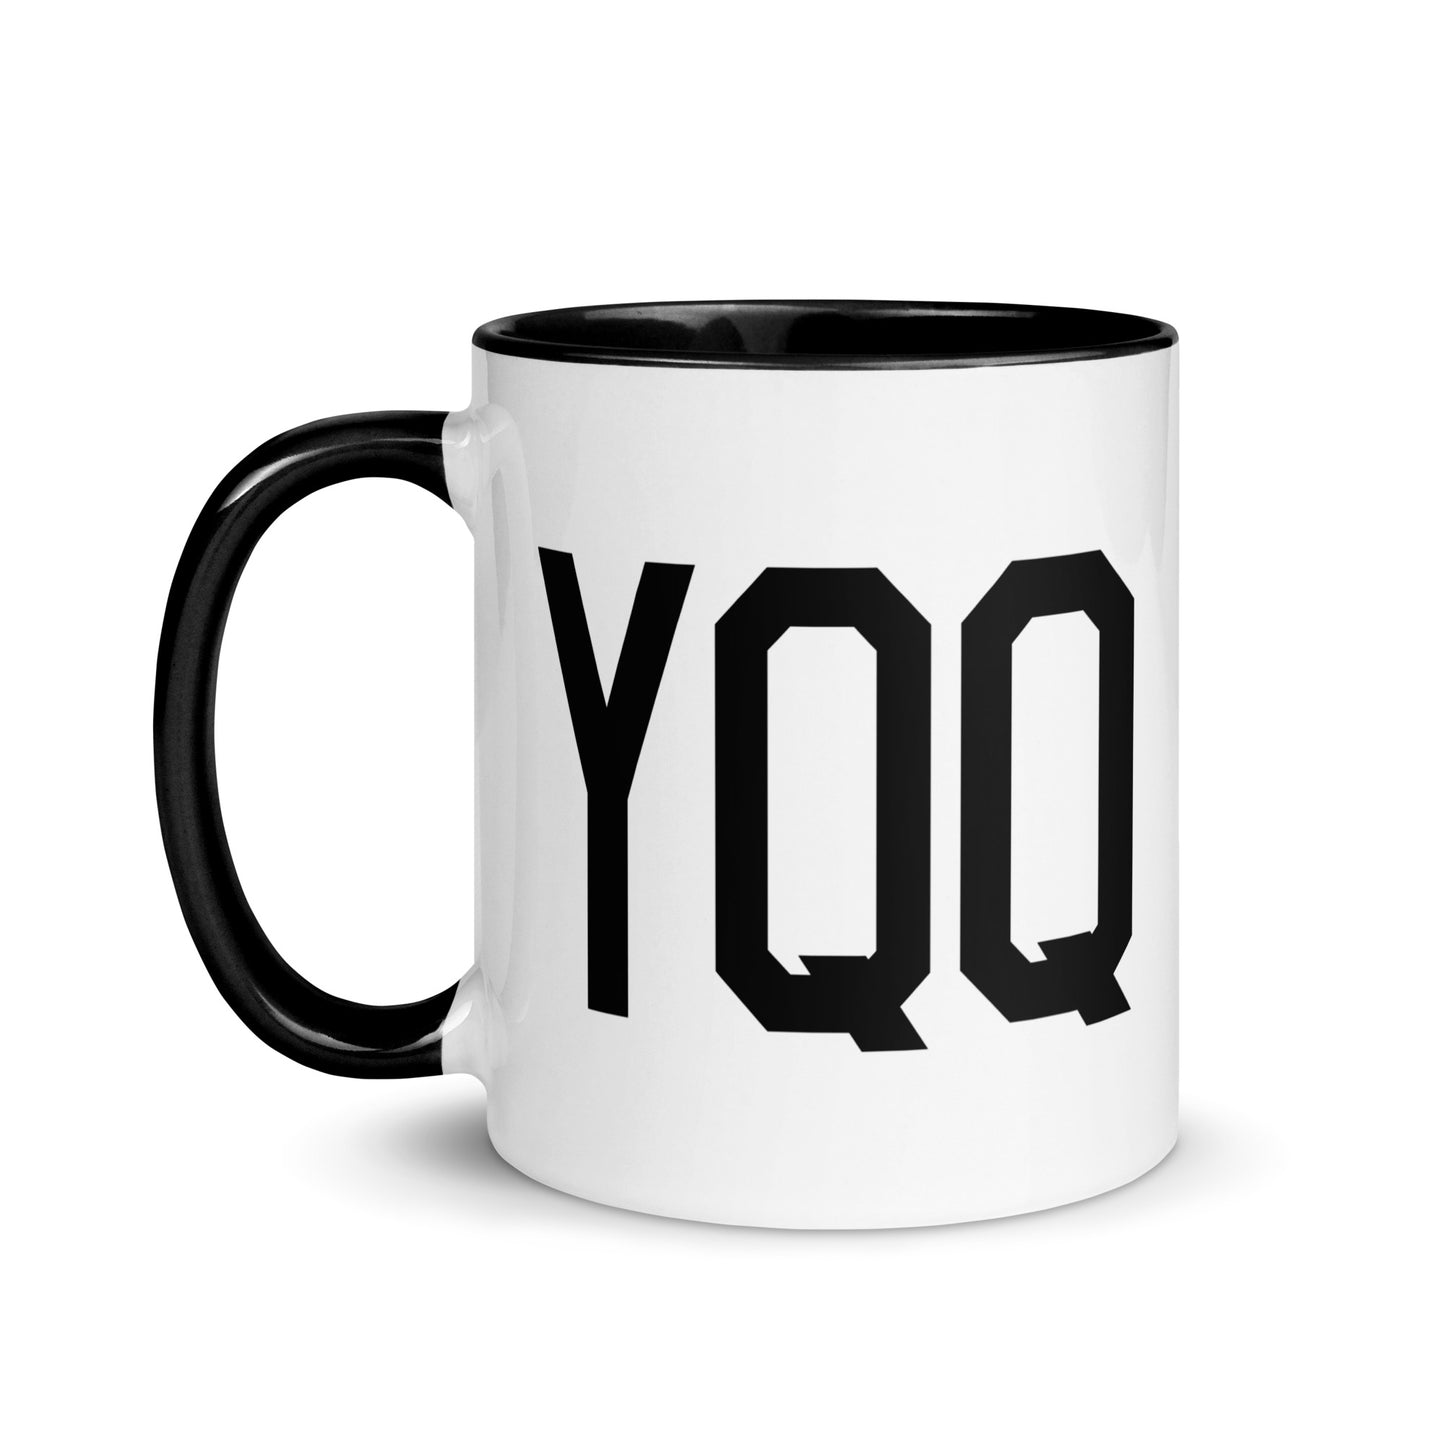 Aviation-Theme Coffee Mug - Black • YQQ Comox • YHM Designs - Image 03